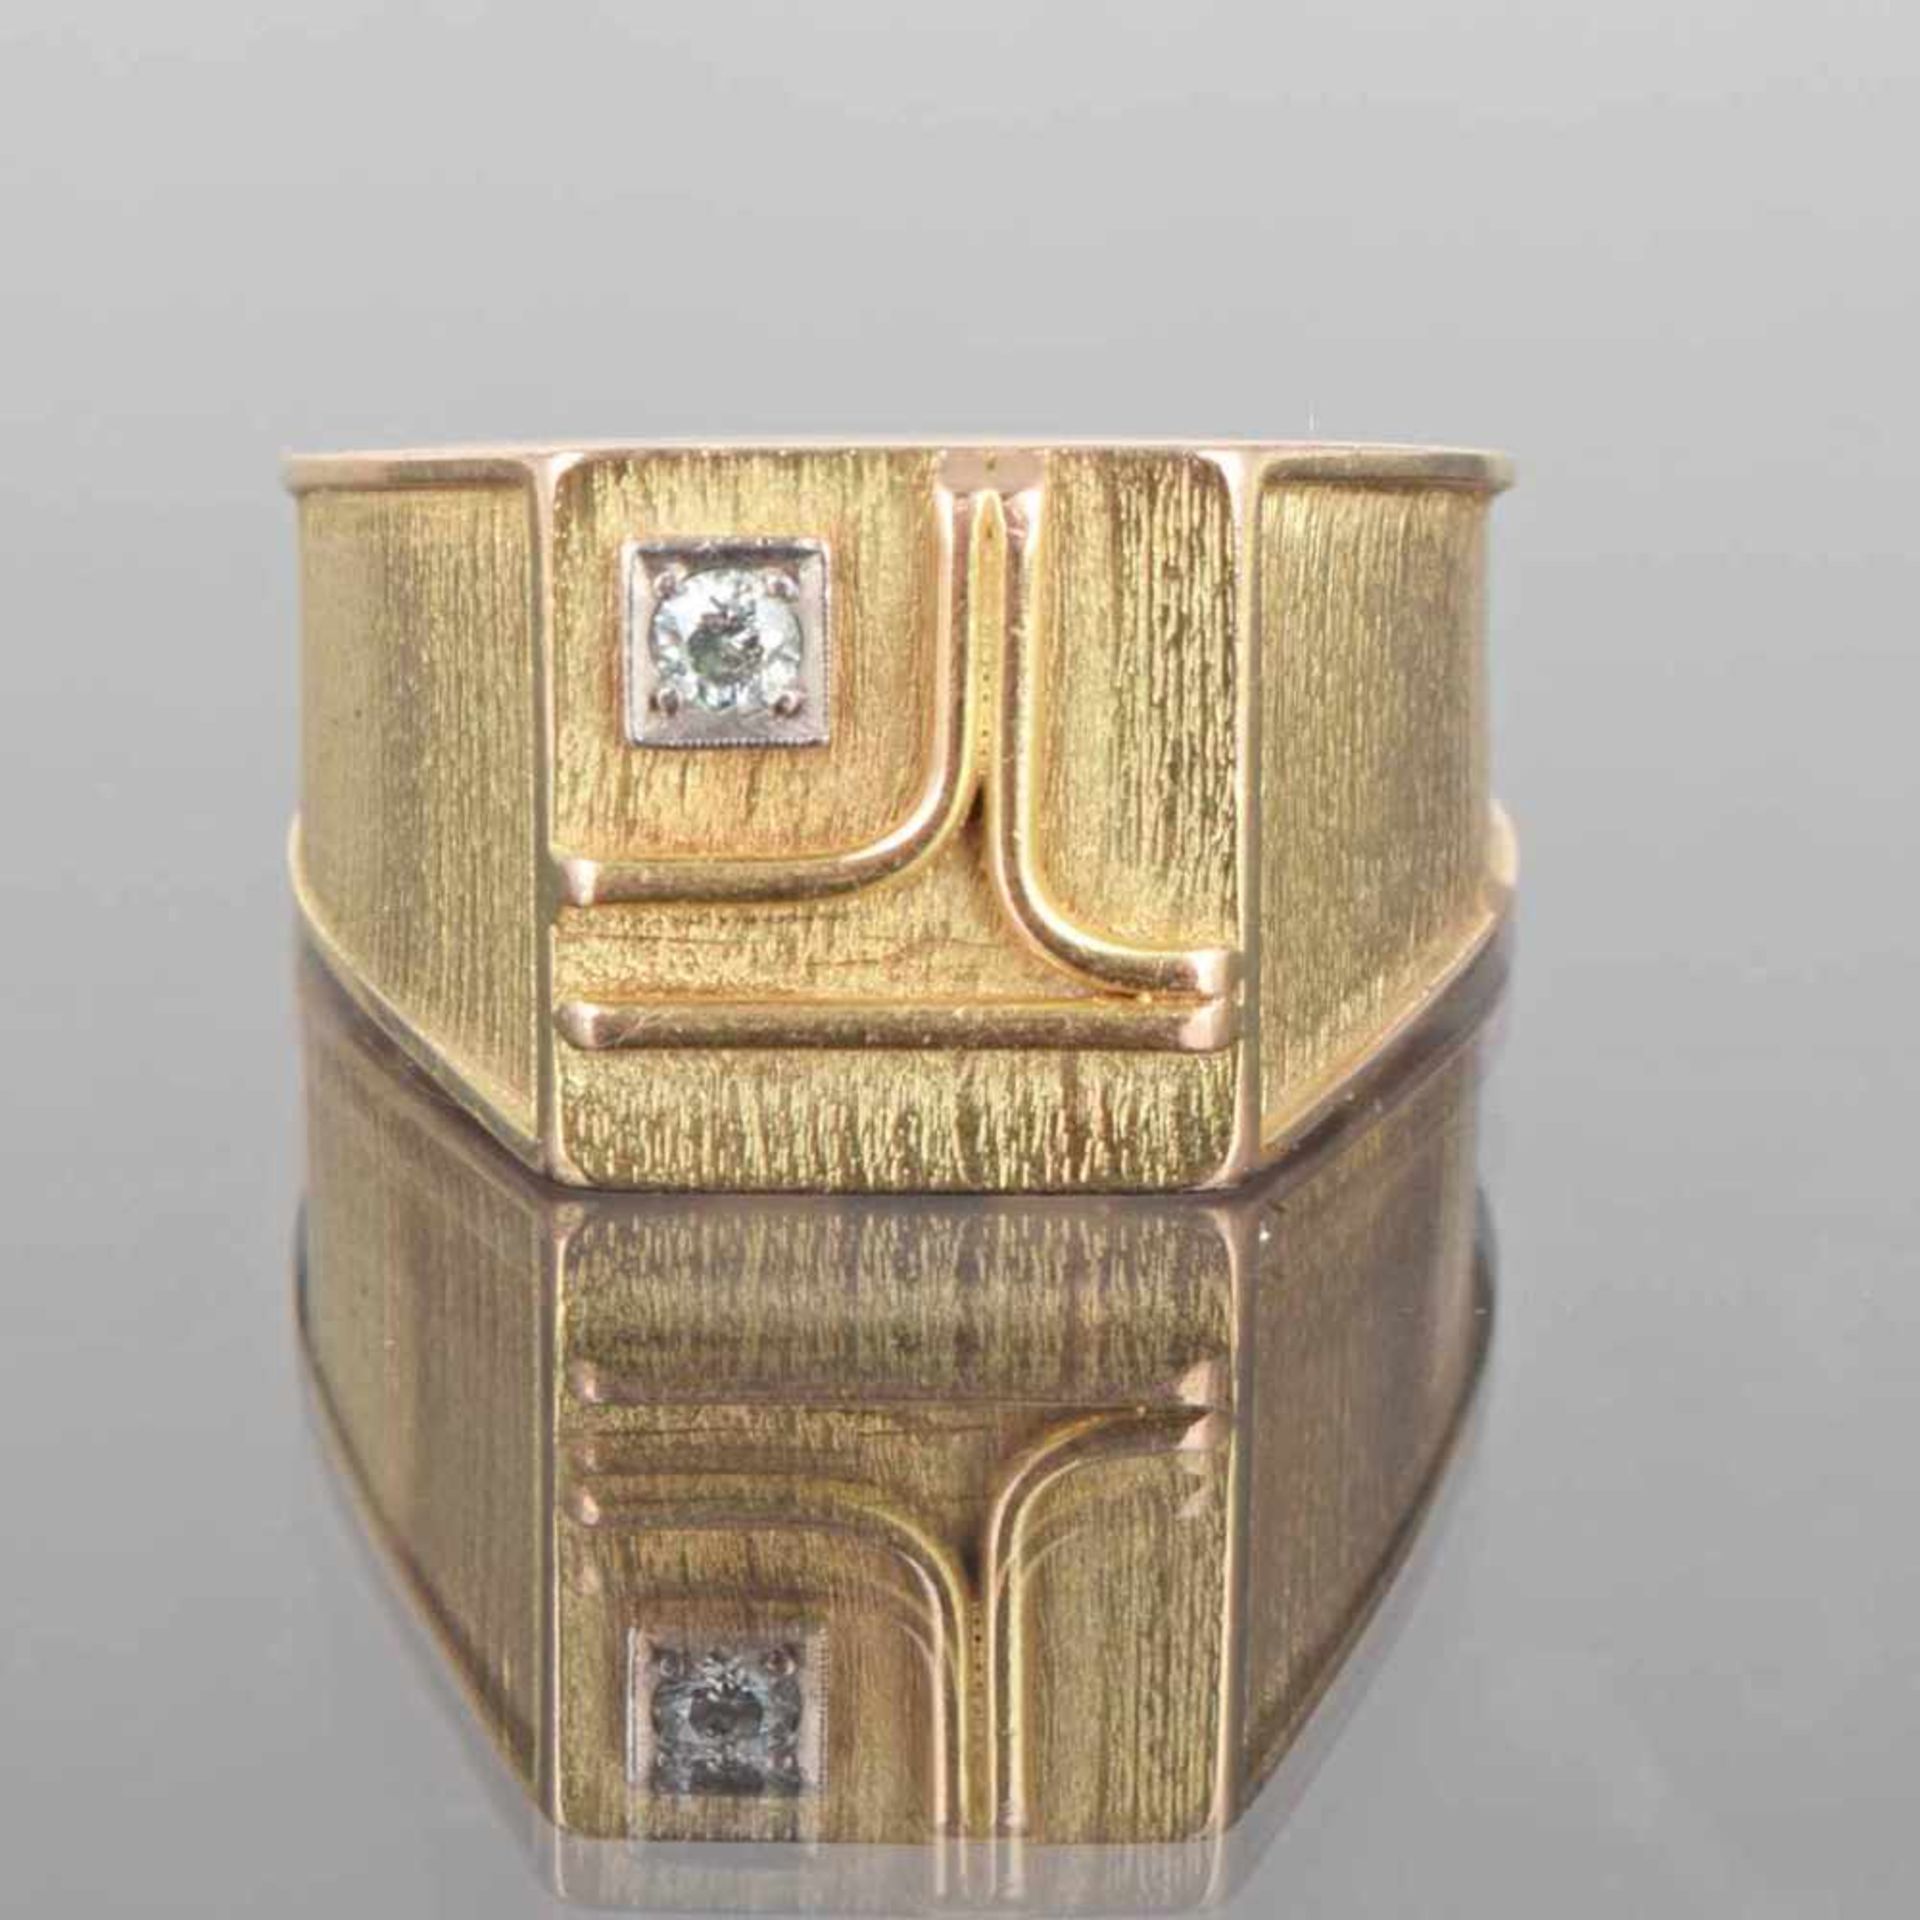 Herrenring GG 585 geprüft, im flachen vierseitigen Ringkopf mit aufgebrachten Goldstäben außermittig - Bild 3 aus 3